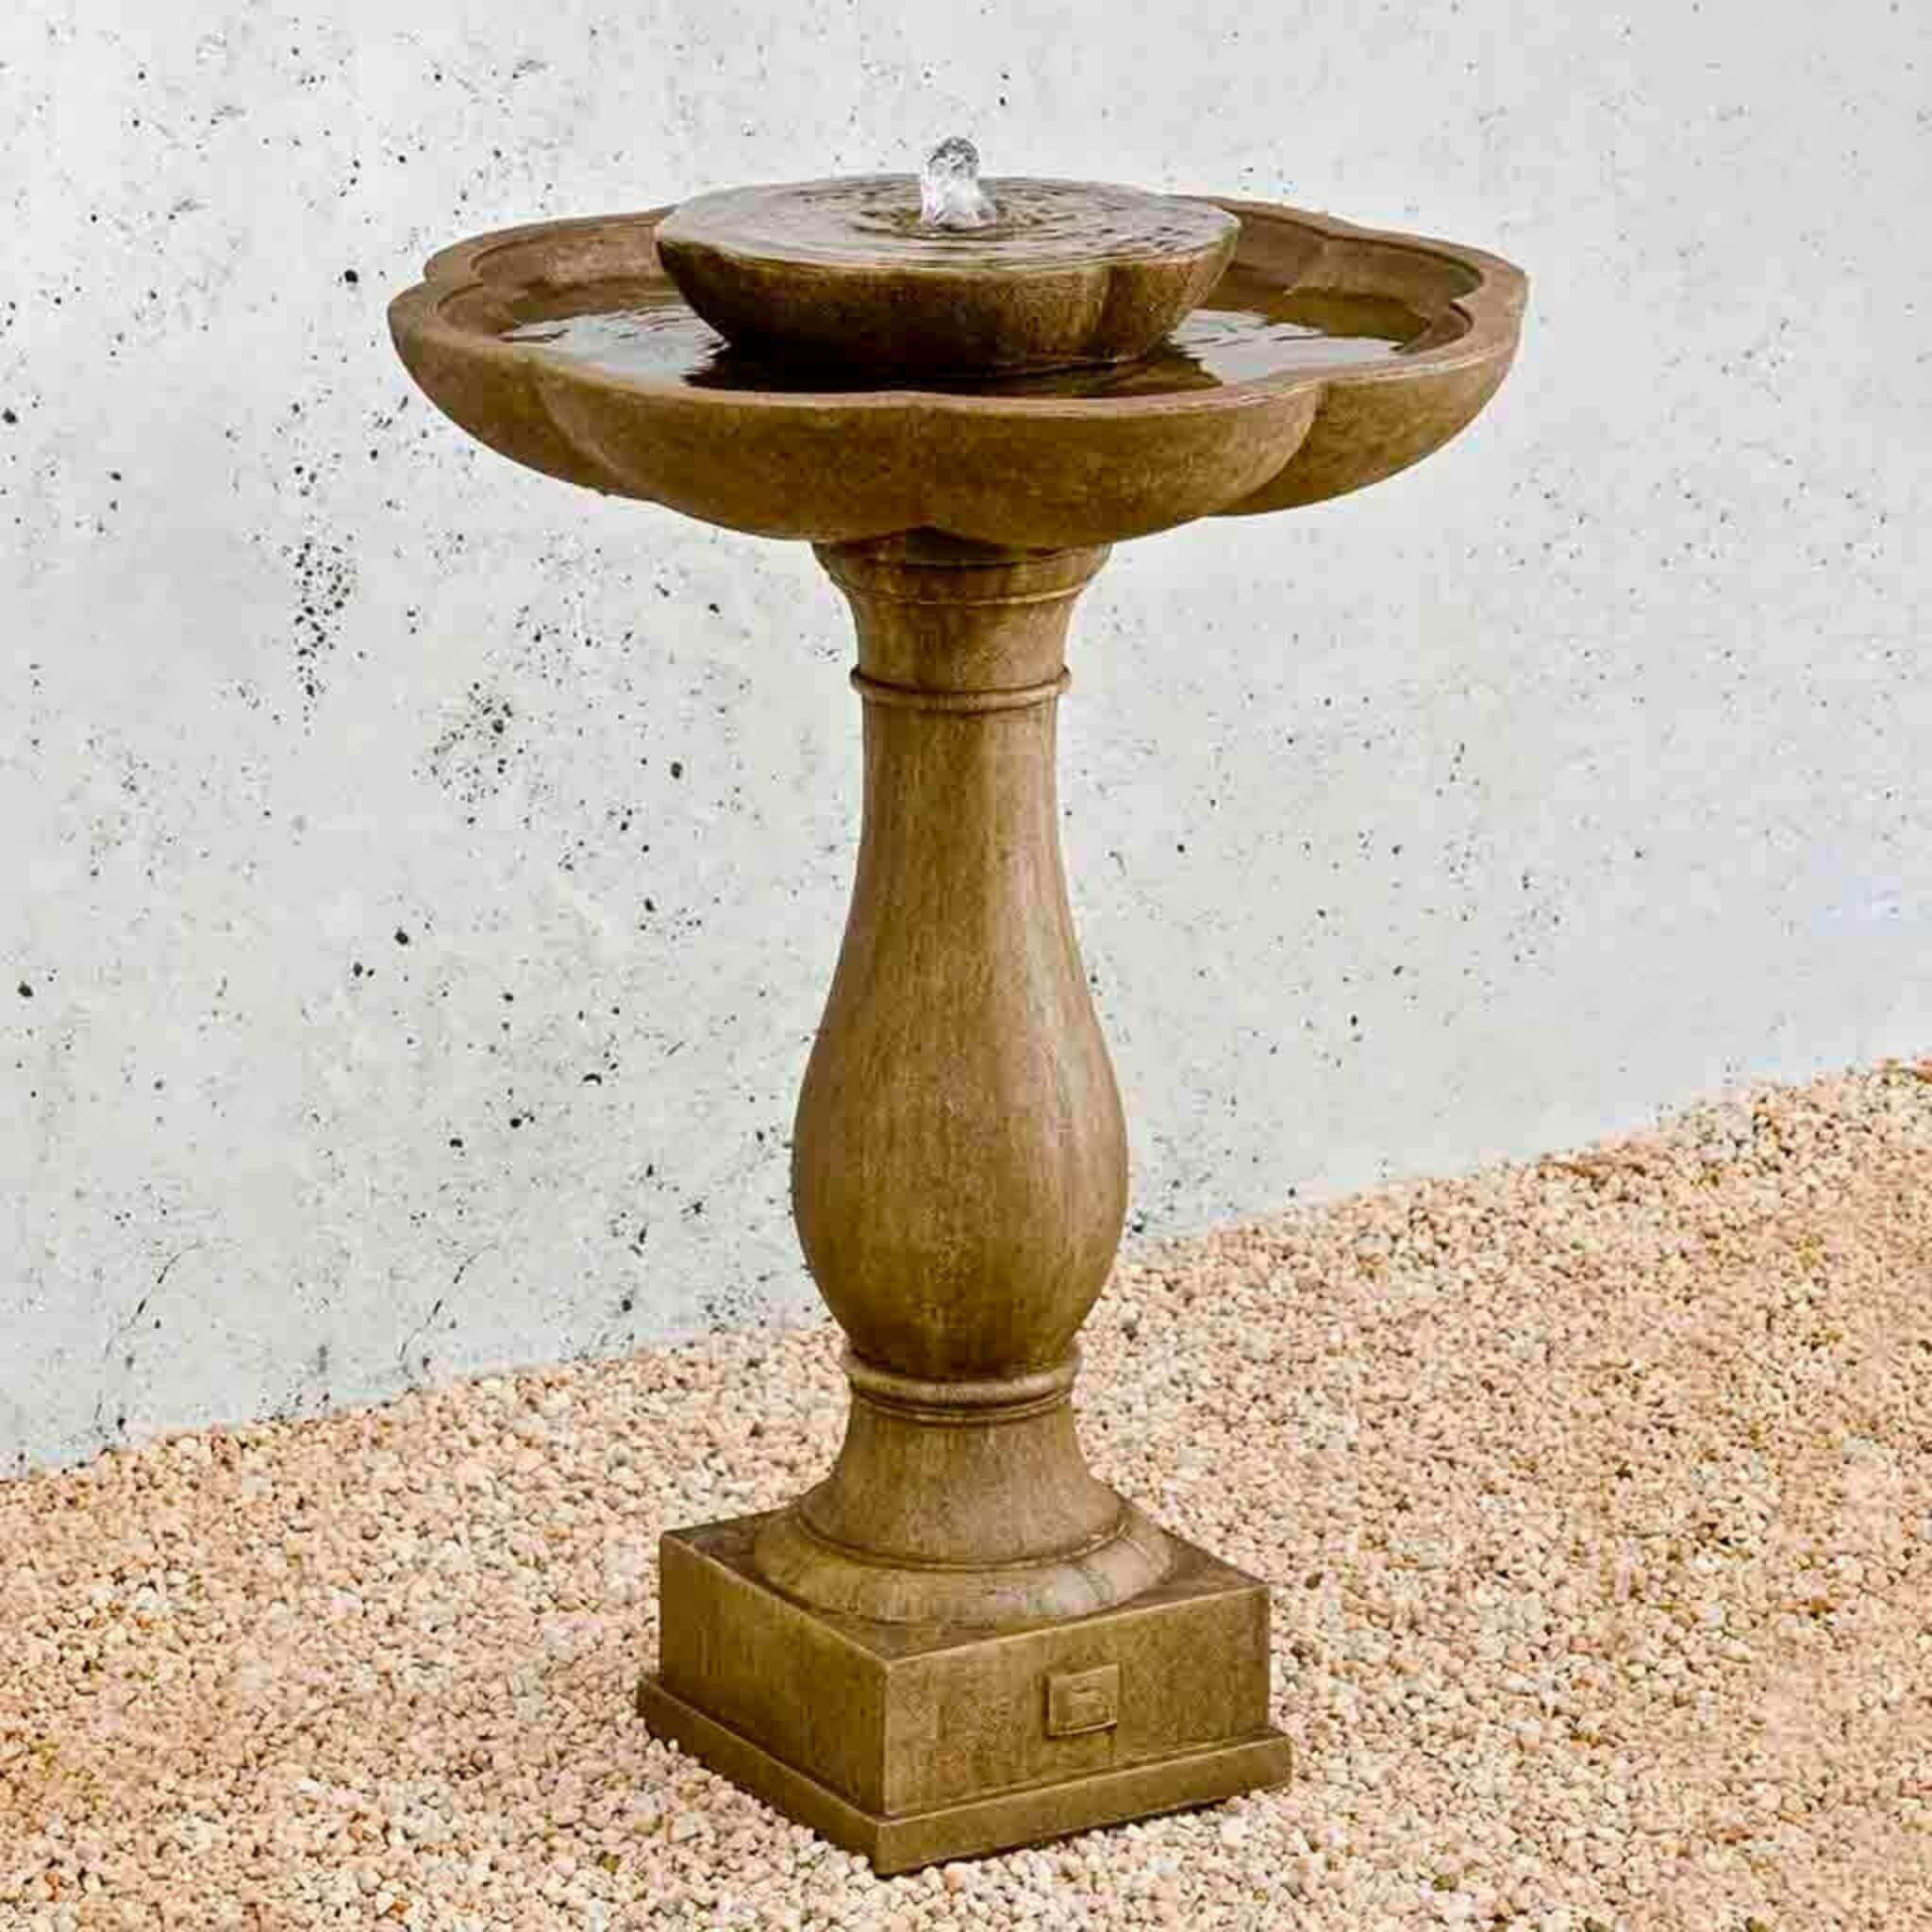  Flores Pedestal Concrete Fountain - Campania #FT180